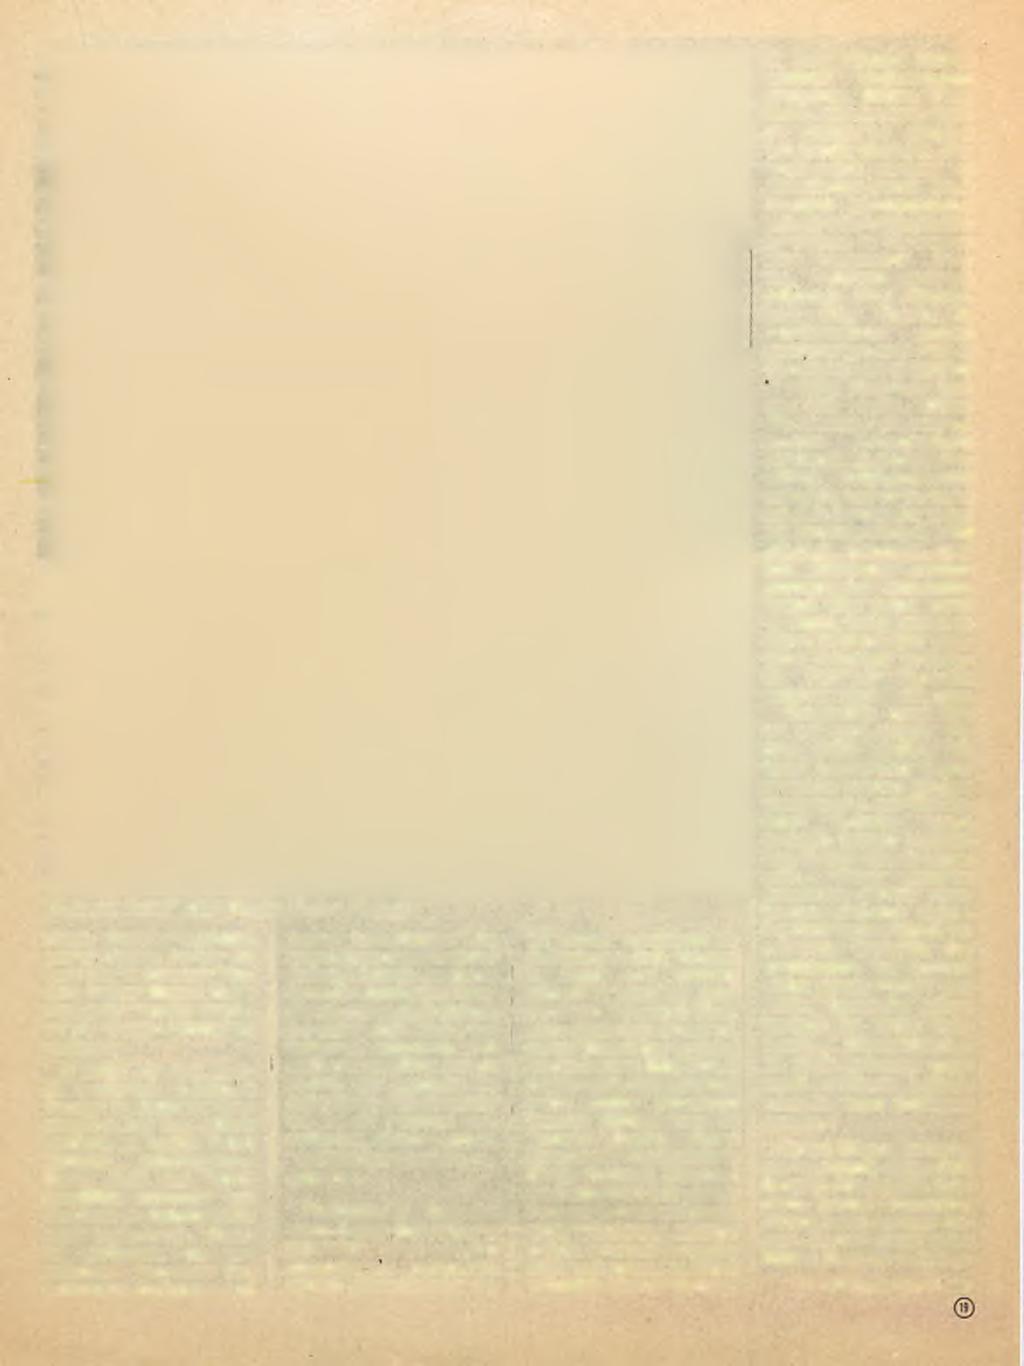 Kabataş Sahili 1923 (Resim Heykel Müzesi) yılında Deniz Fotoğrafhanesini yöneten Yarbay Ali Sami Bey in Akademi Müdürü Osman Hamdi Bey e yazdığı bir tavsiye mektubu yla Sanayi-i Nefise ye yazılıyor.